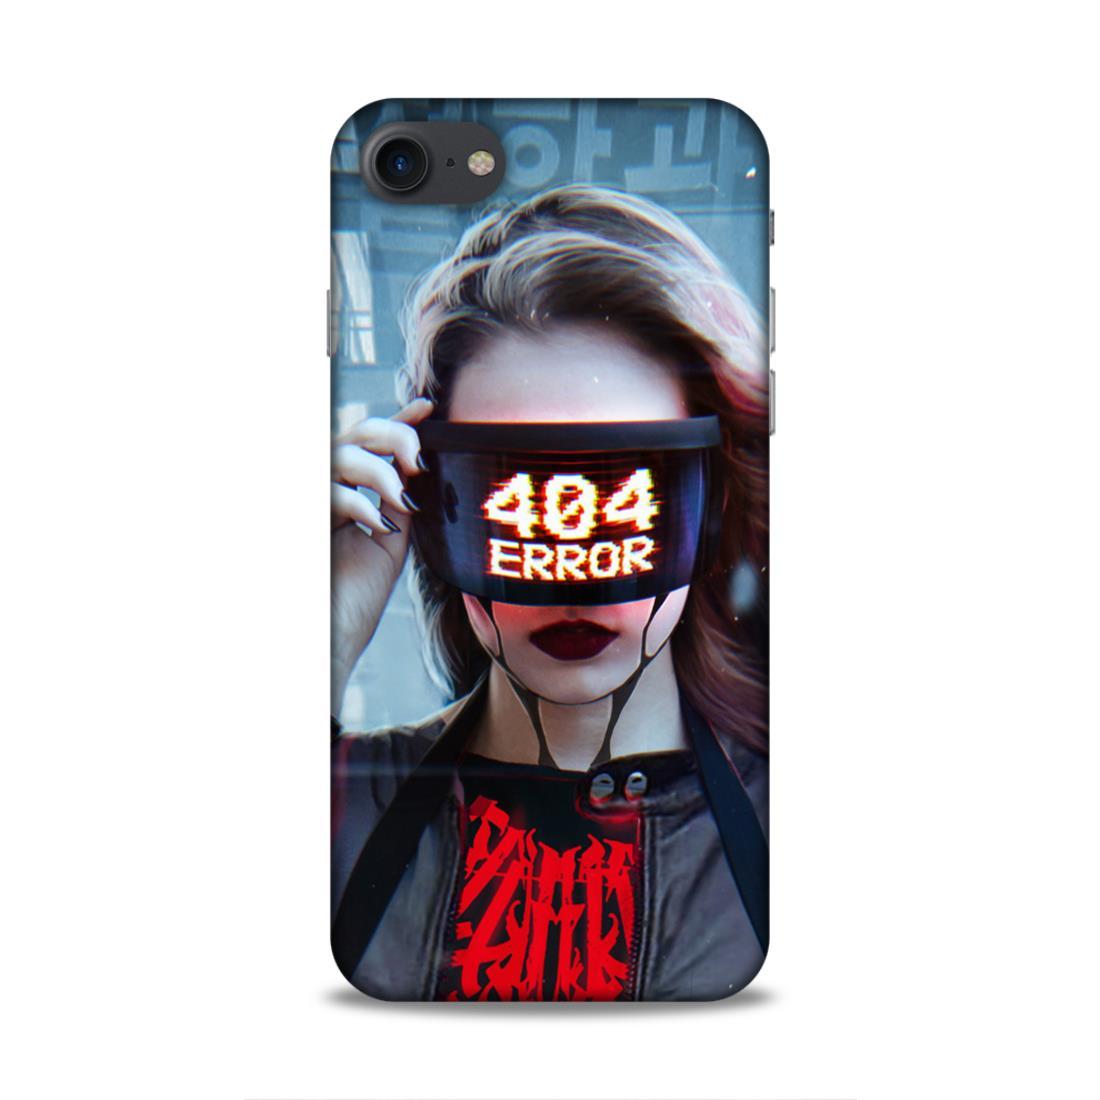 404 Error iPhone 7 Phone Cover